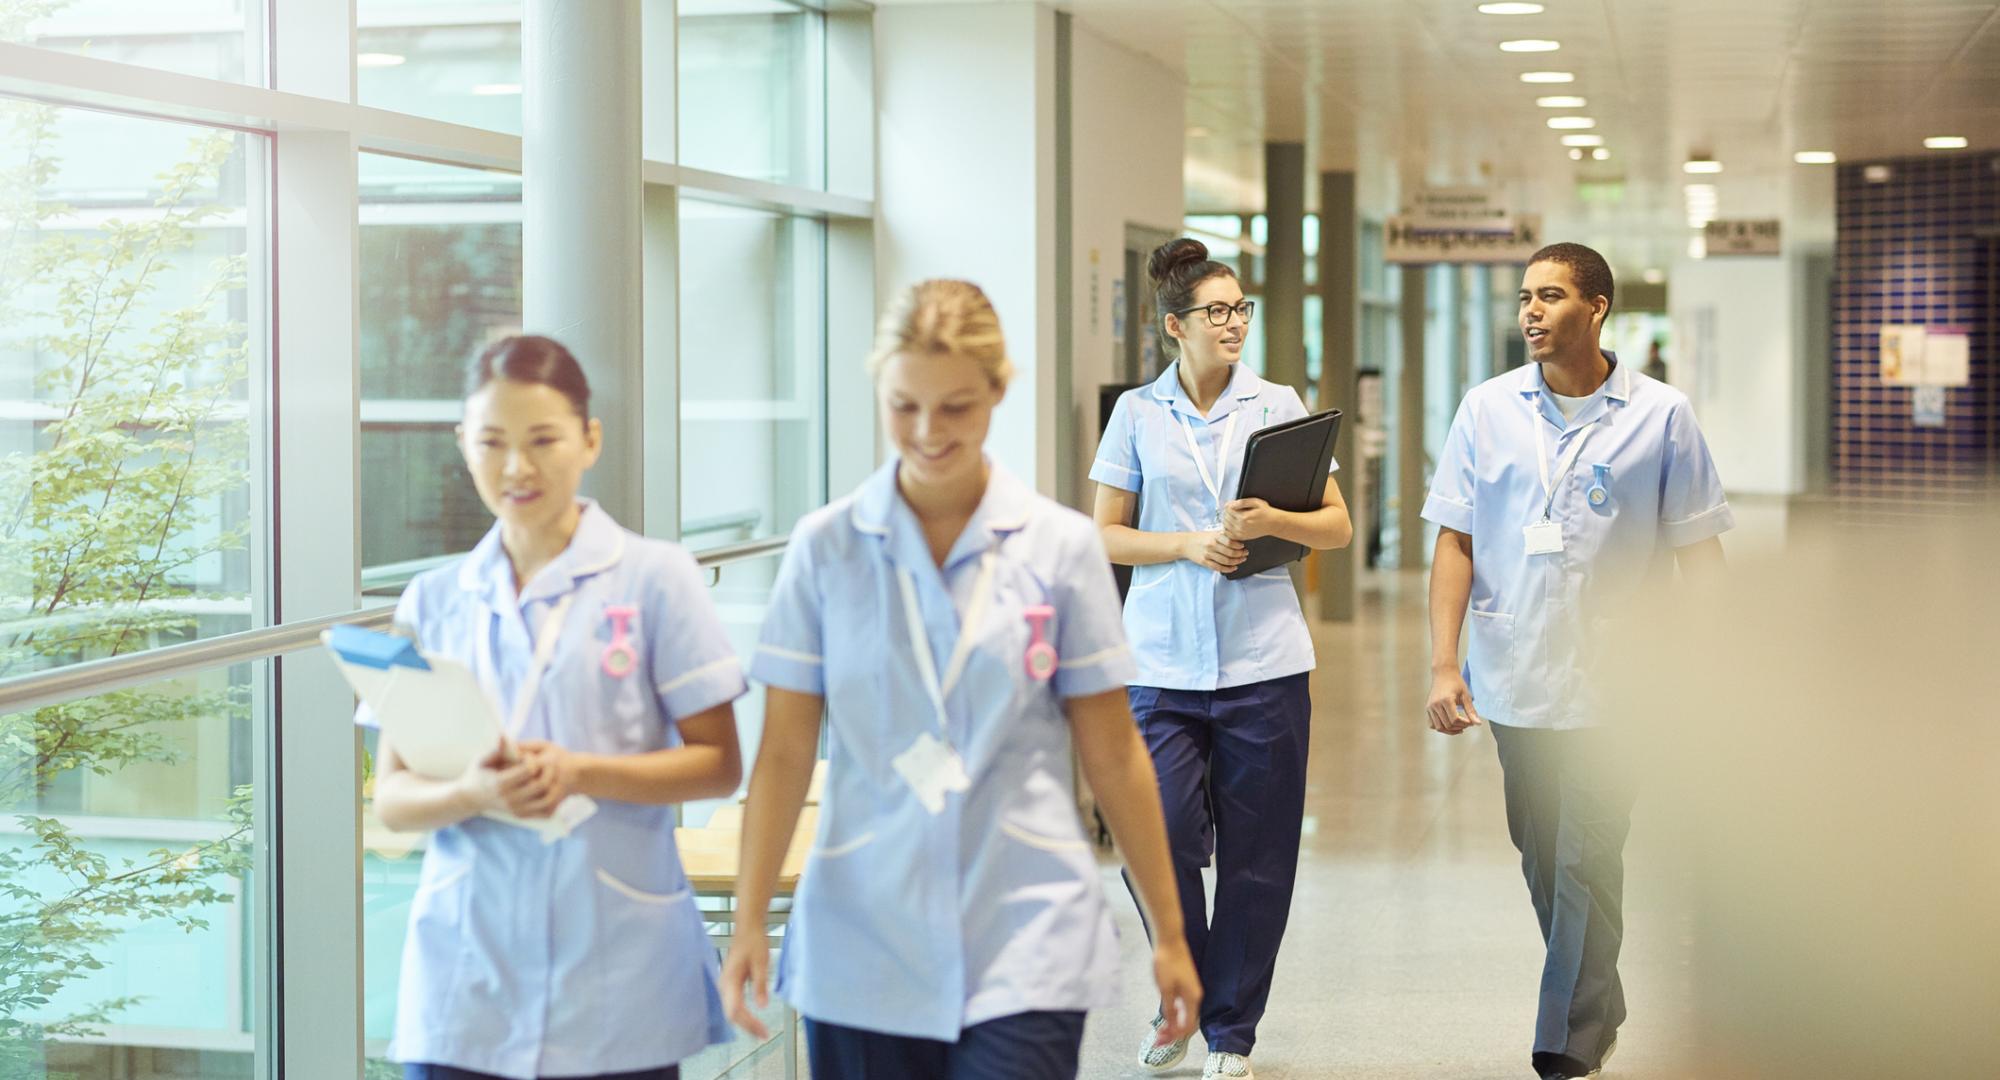 A group of nurses walking through a hospital corridor